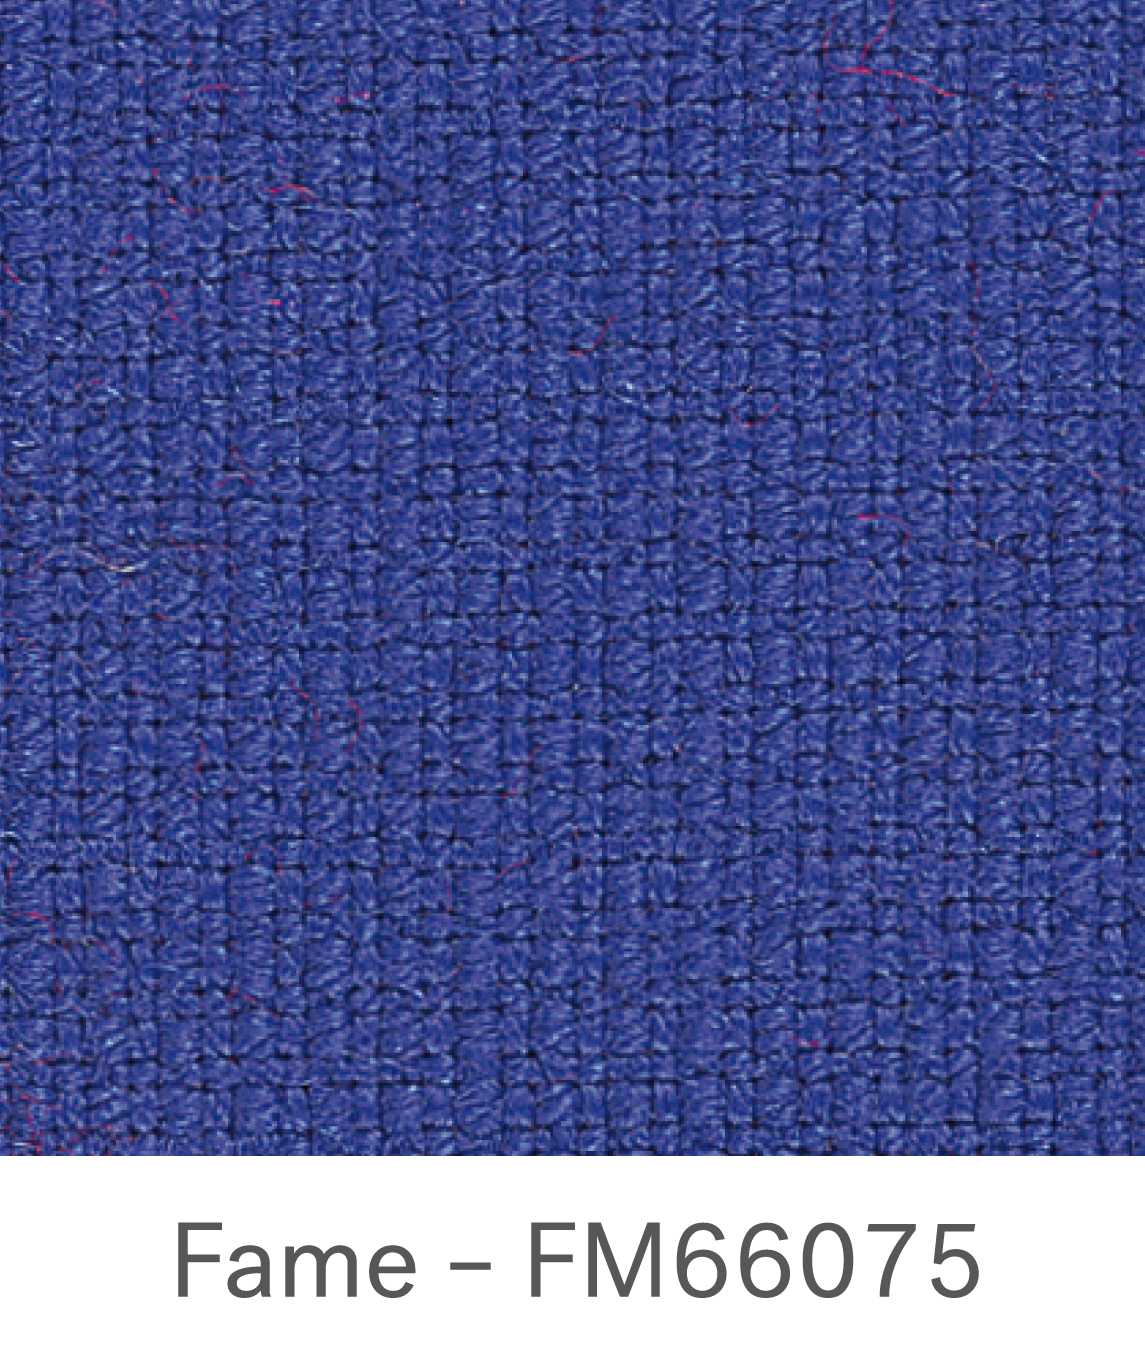 Fame FM66075